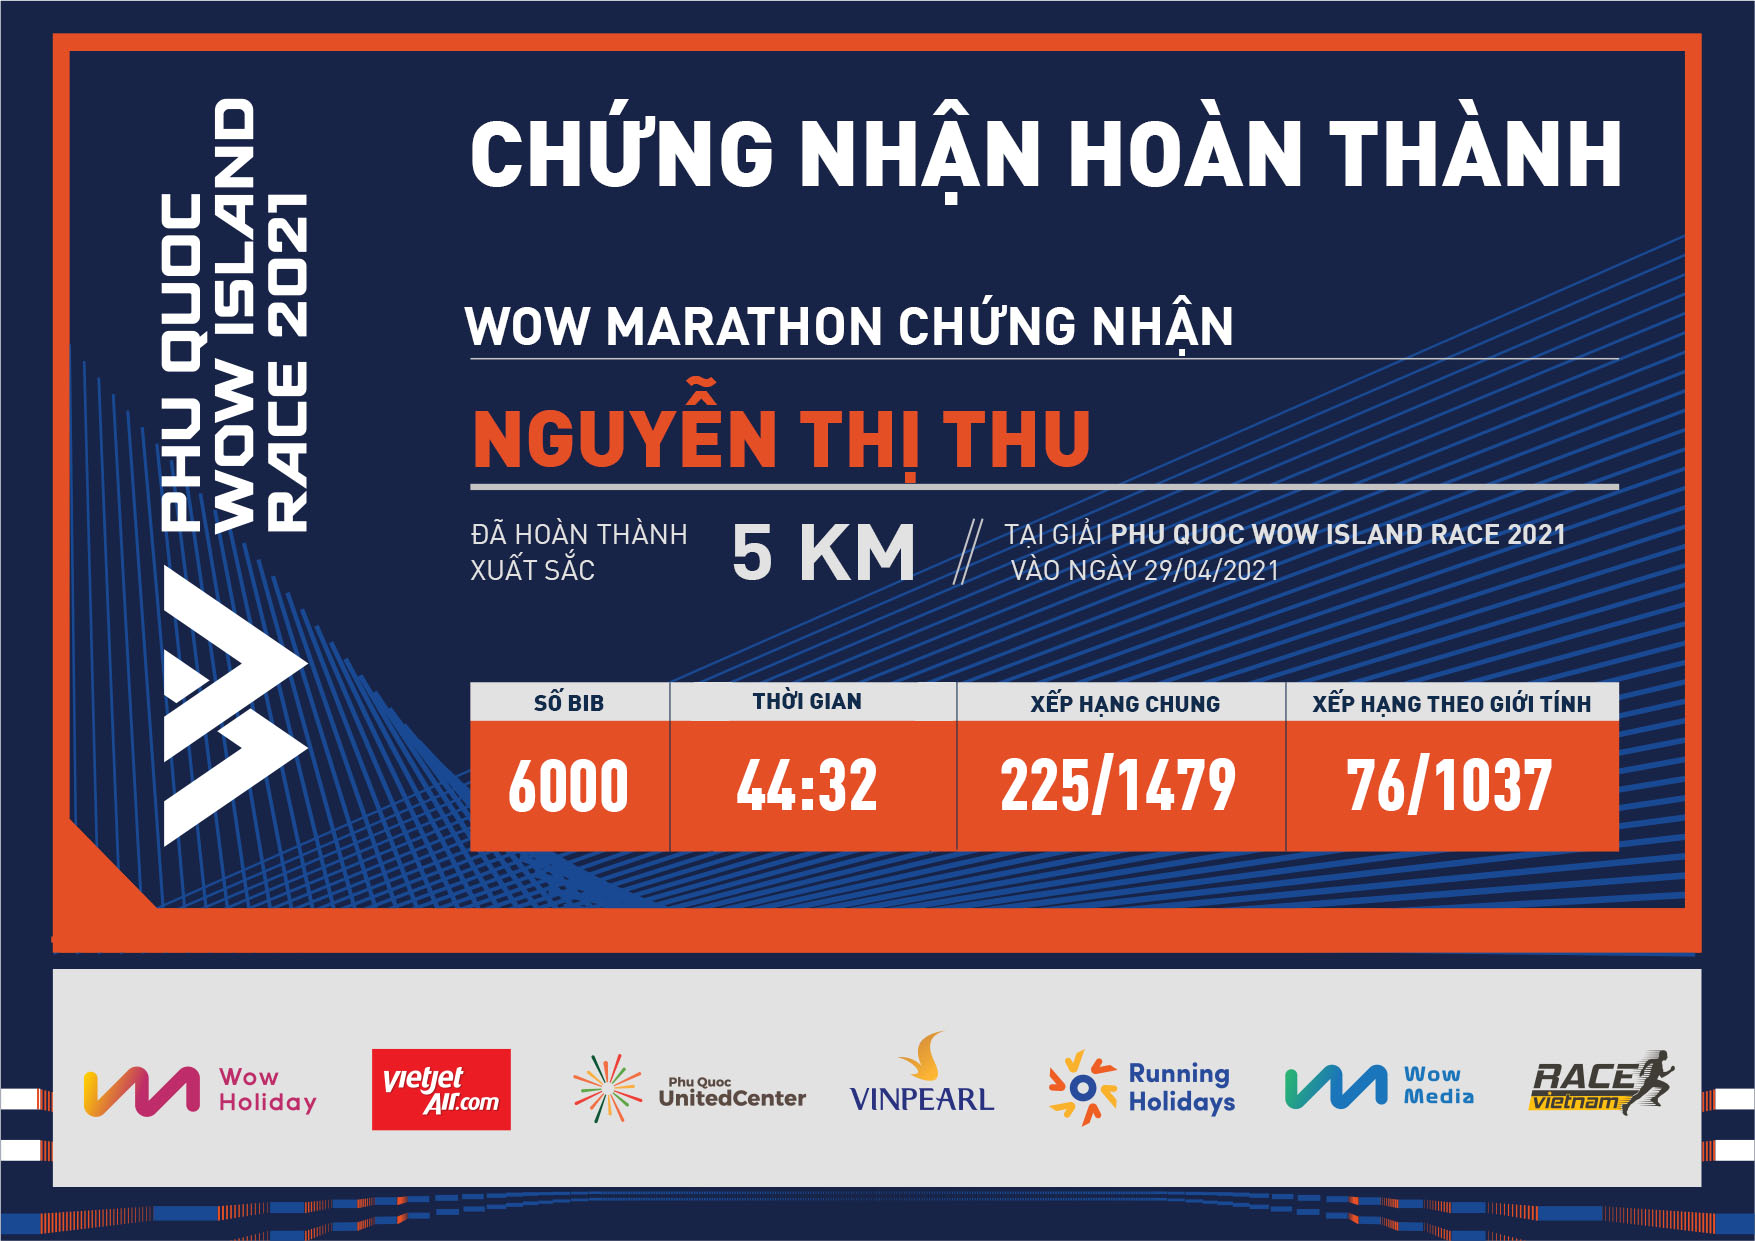 6000 - Nguyễn Thị Thu